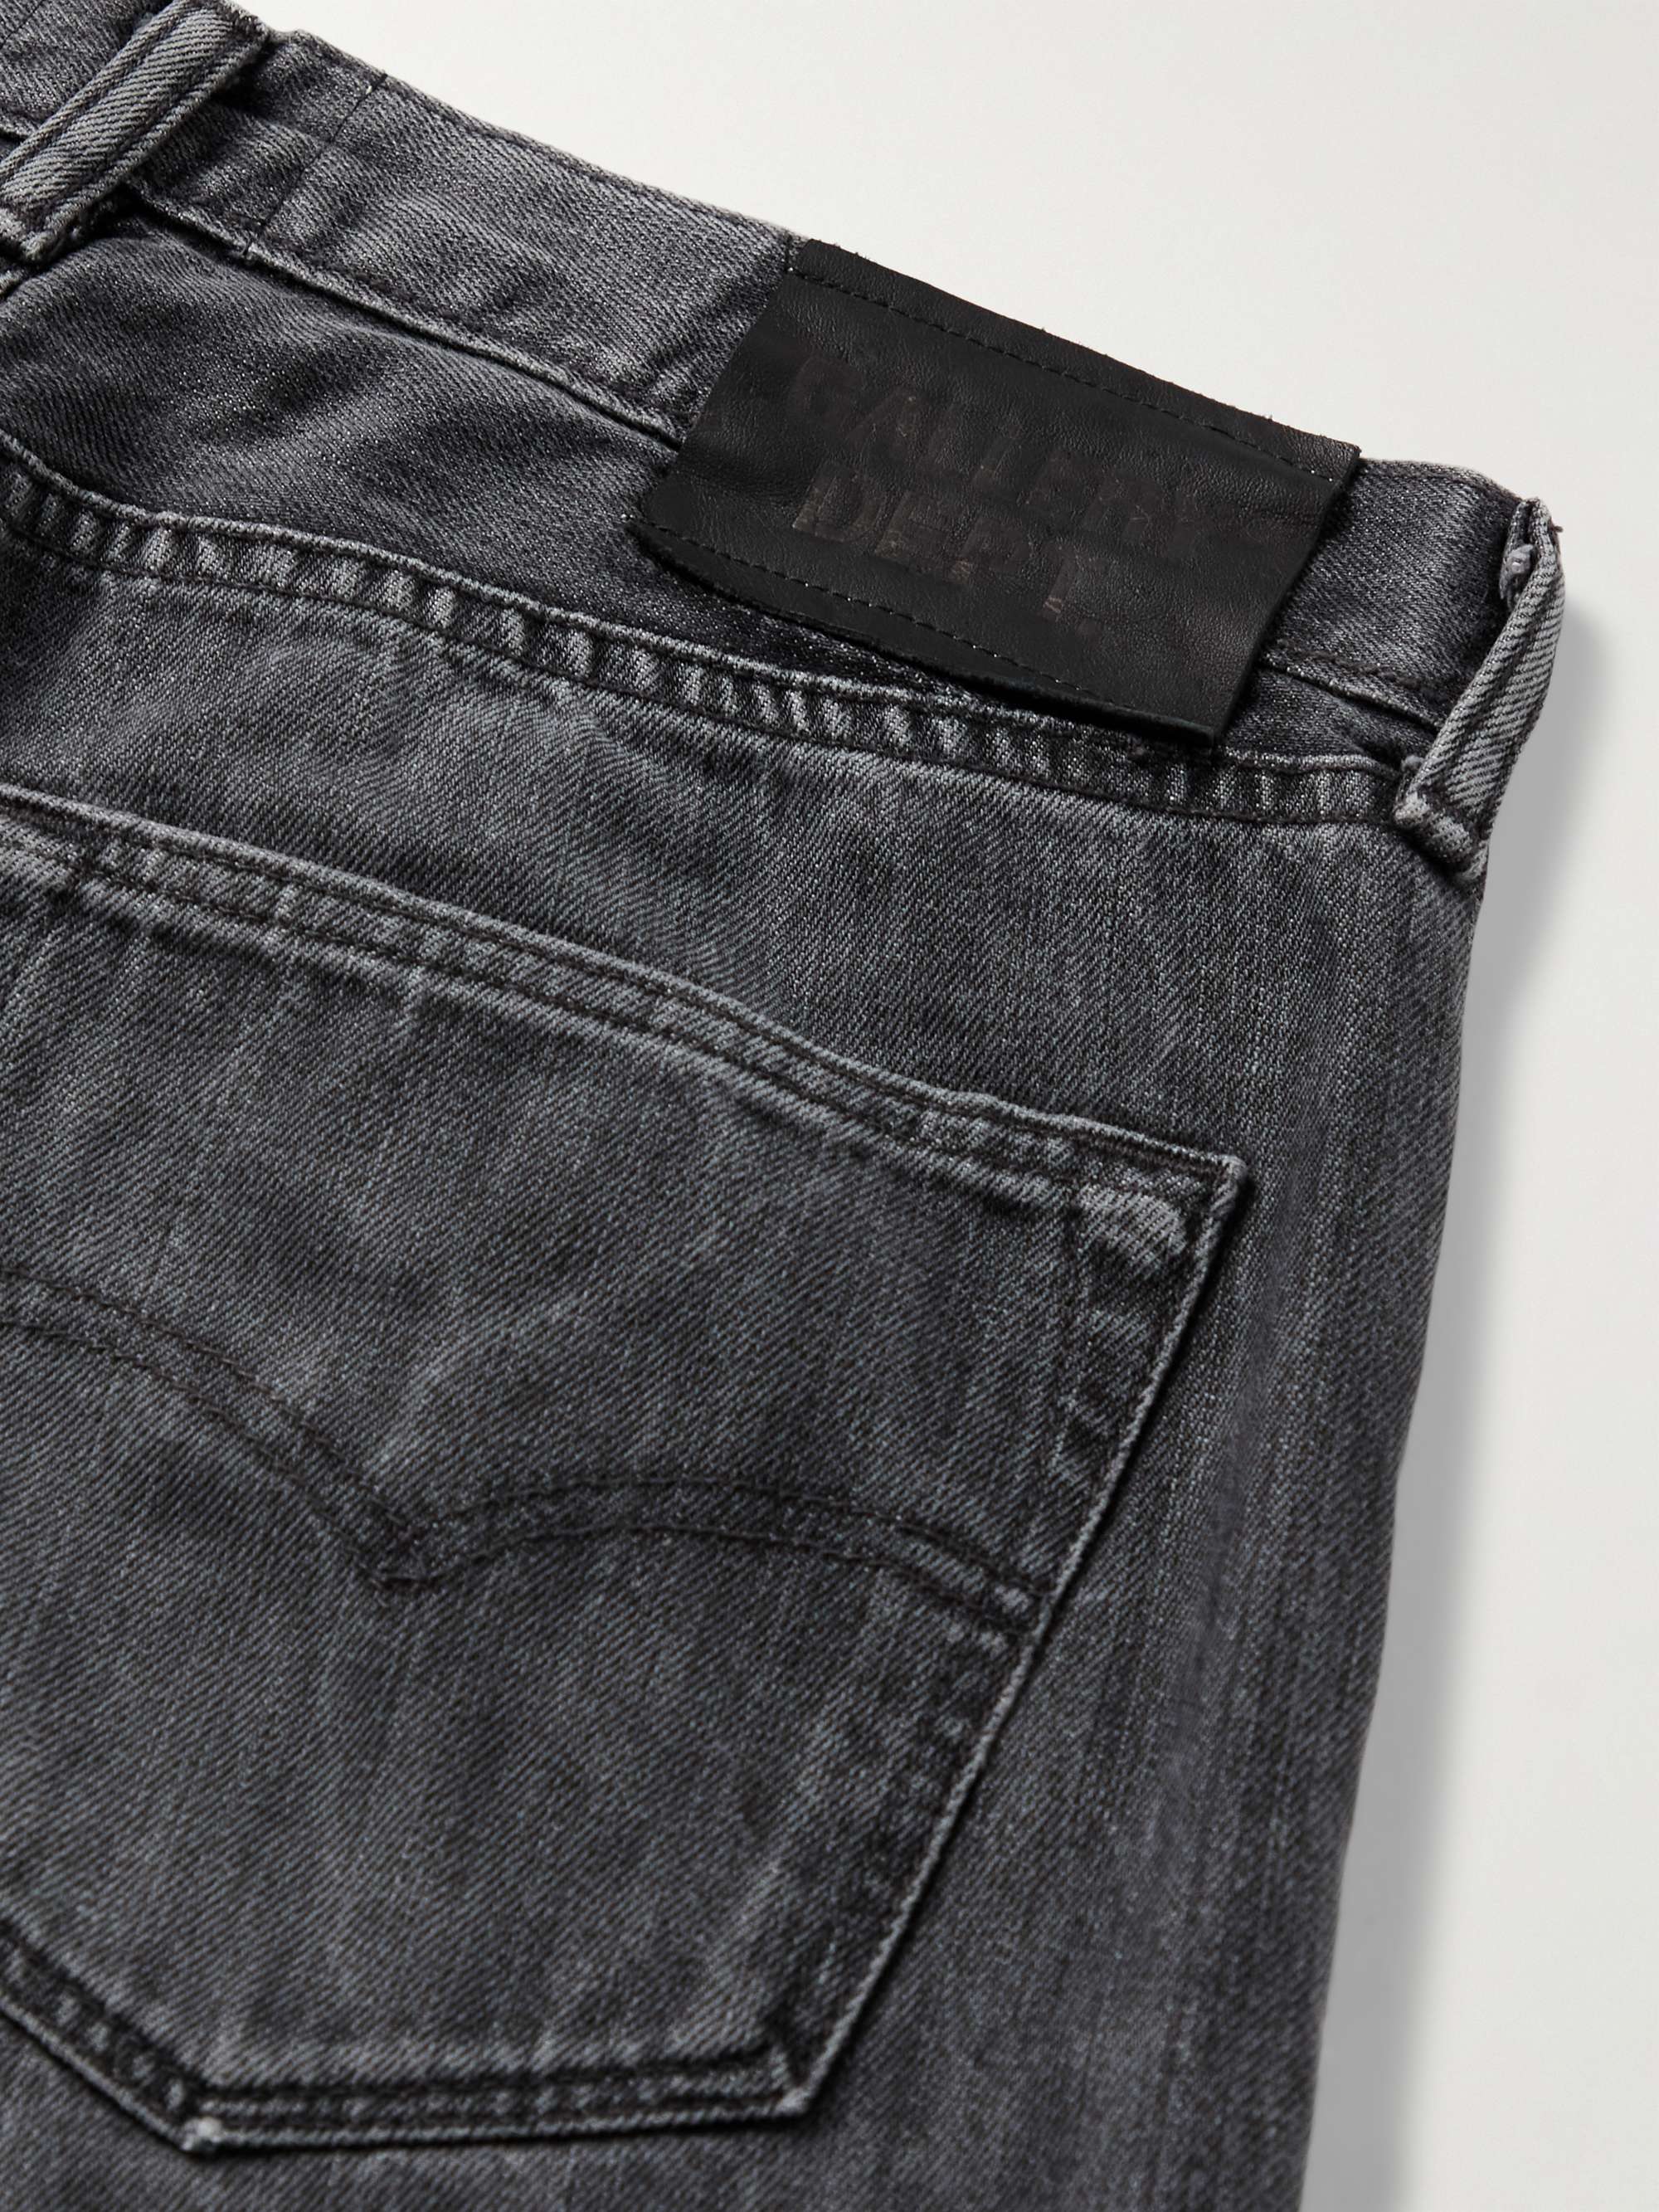 GALLERY DEPT. LA Slim-Fit Flared Frayed Studded Jeans